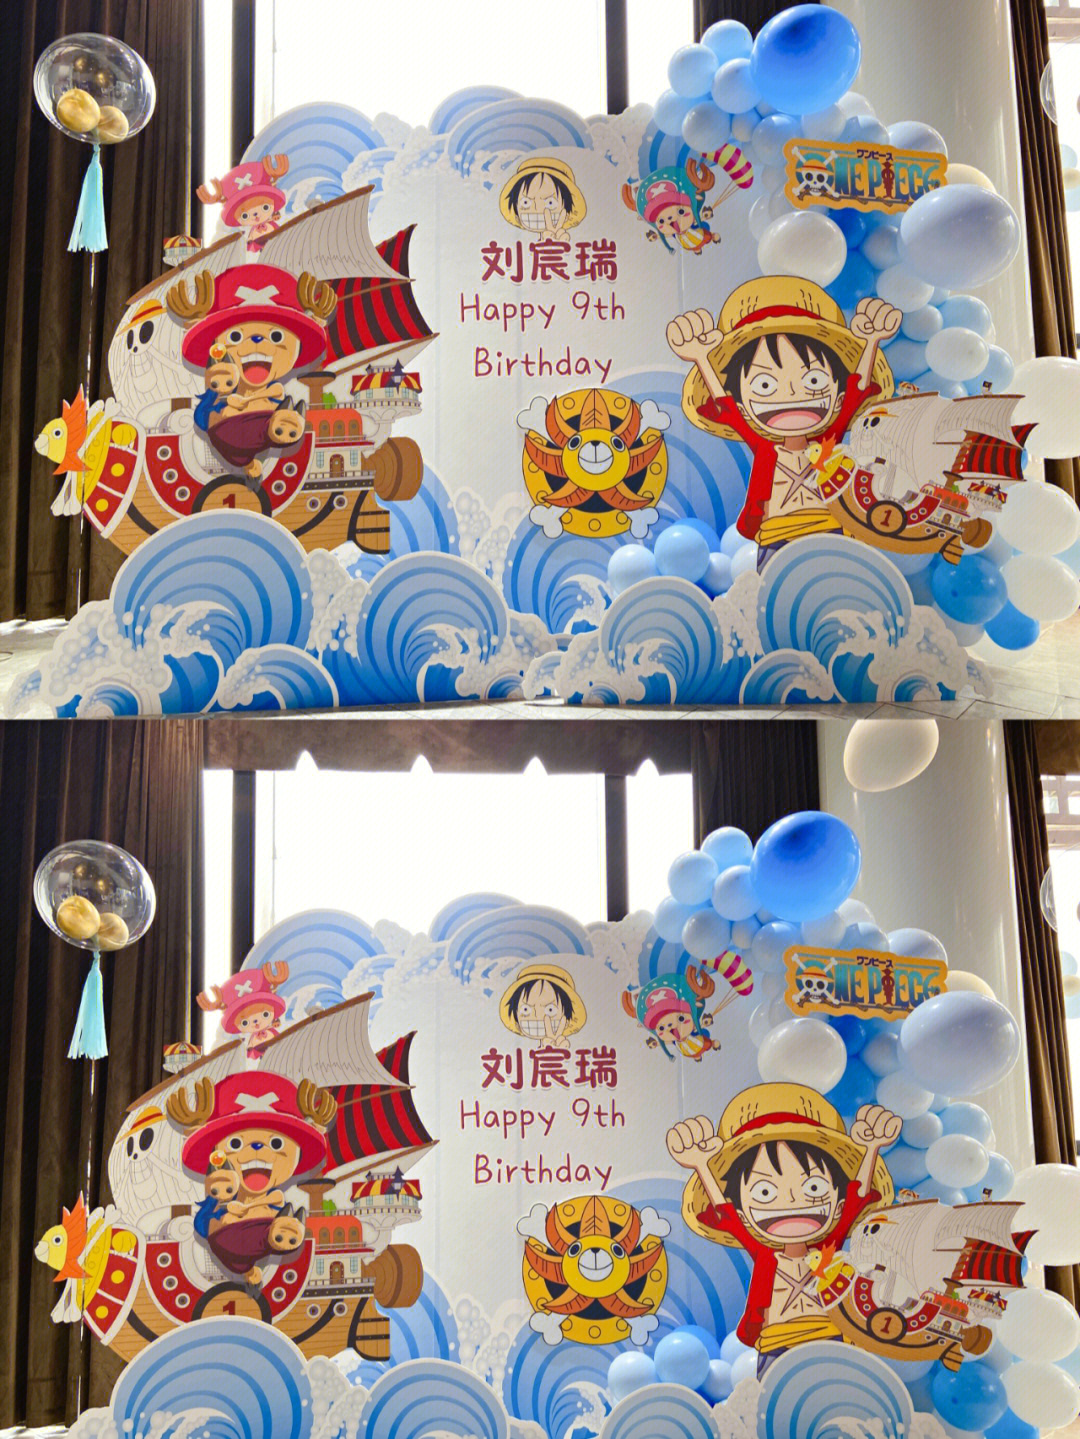 重庆餐厅海贼王主题生日布置